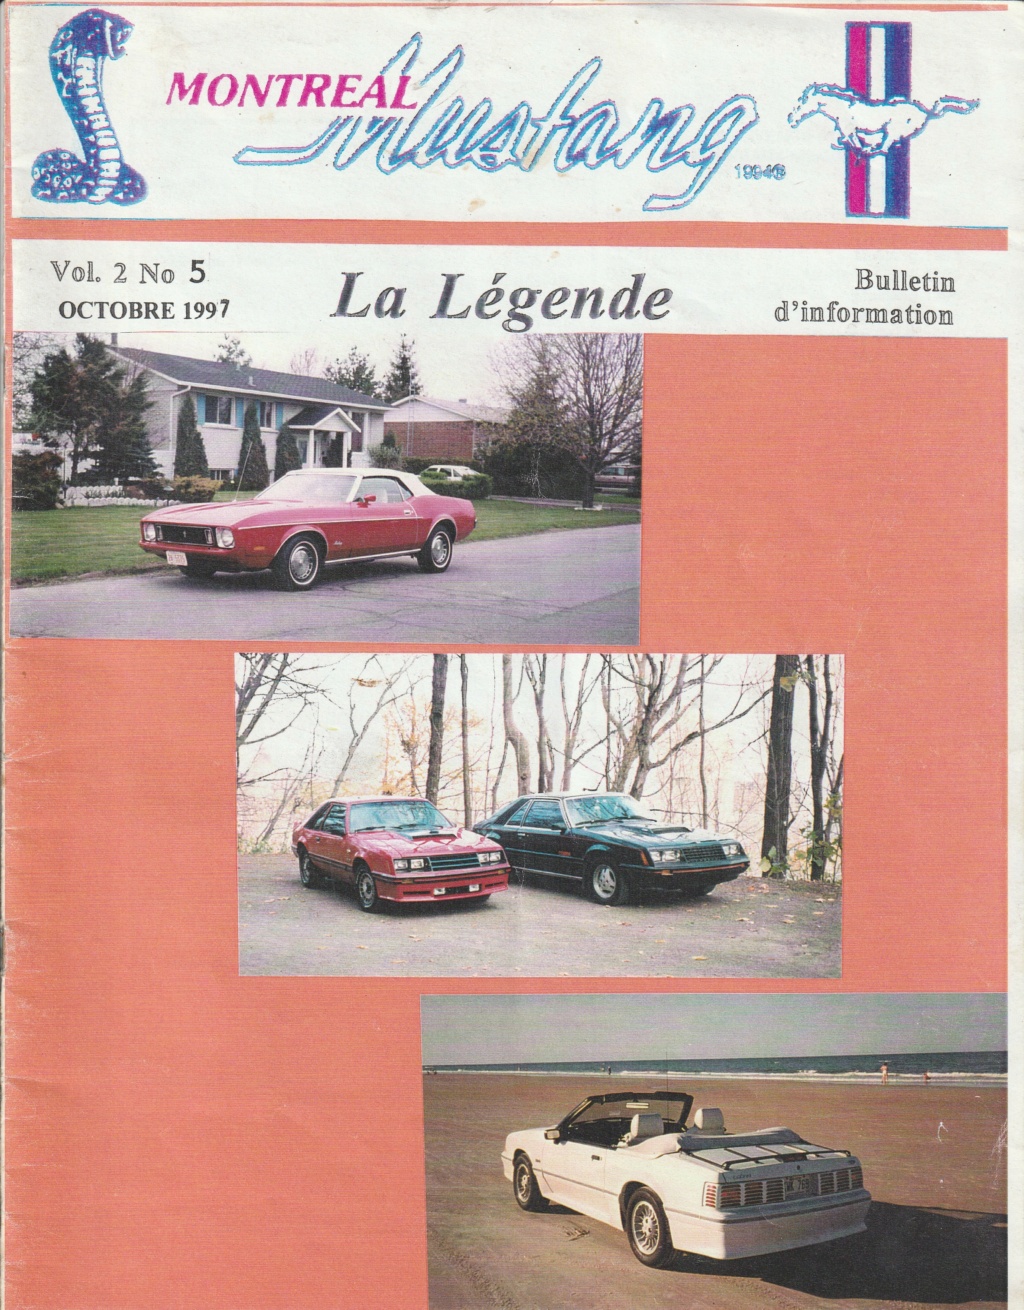 Montréal Mustang dans le temps! 1981 à aujourd'hui (Histoire en photos) - Page 8 Img_2459